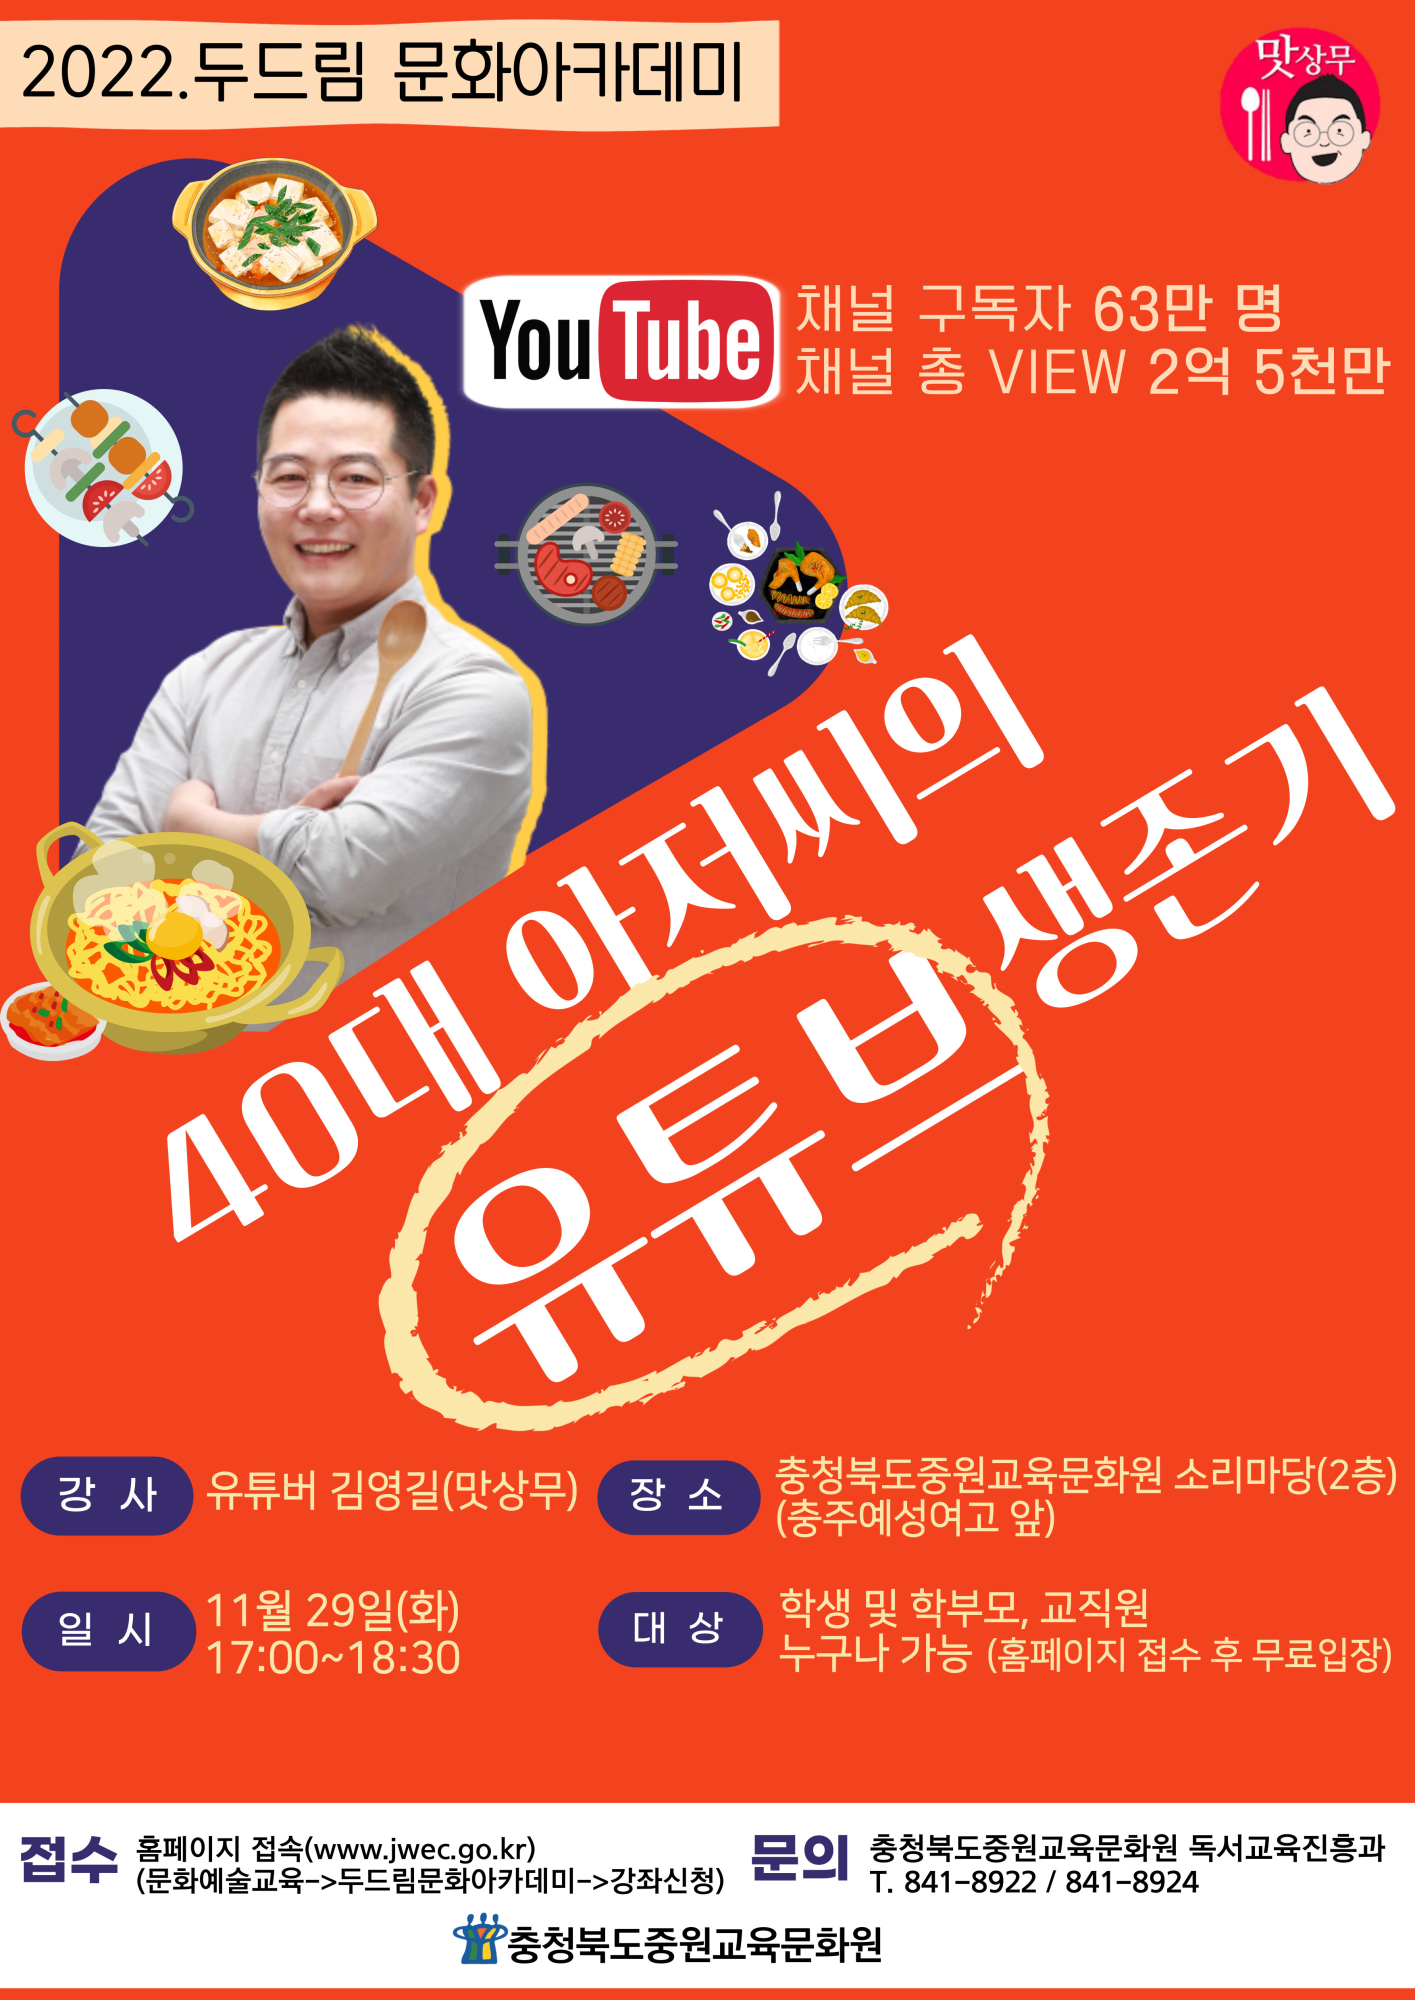 김영길 강연(11월 29일)